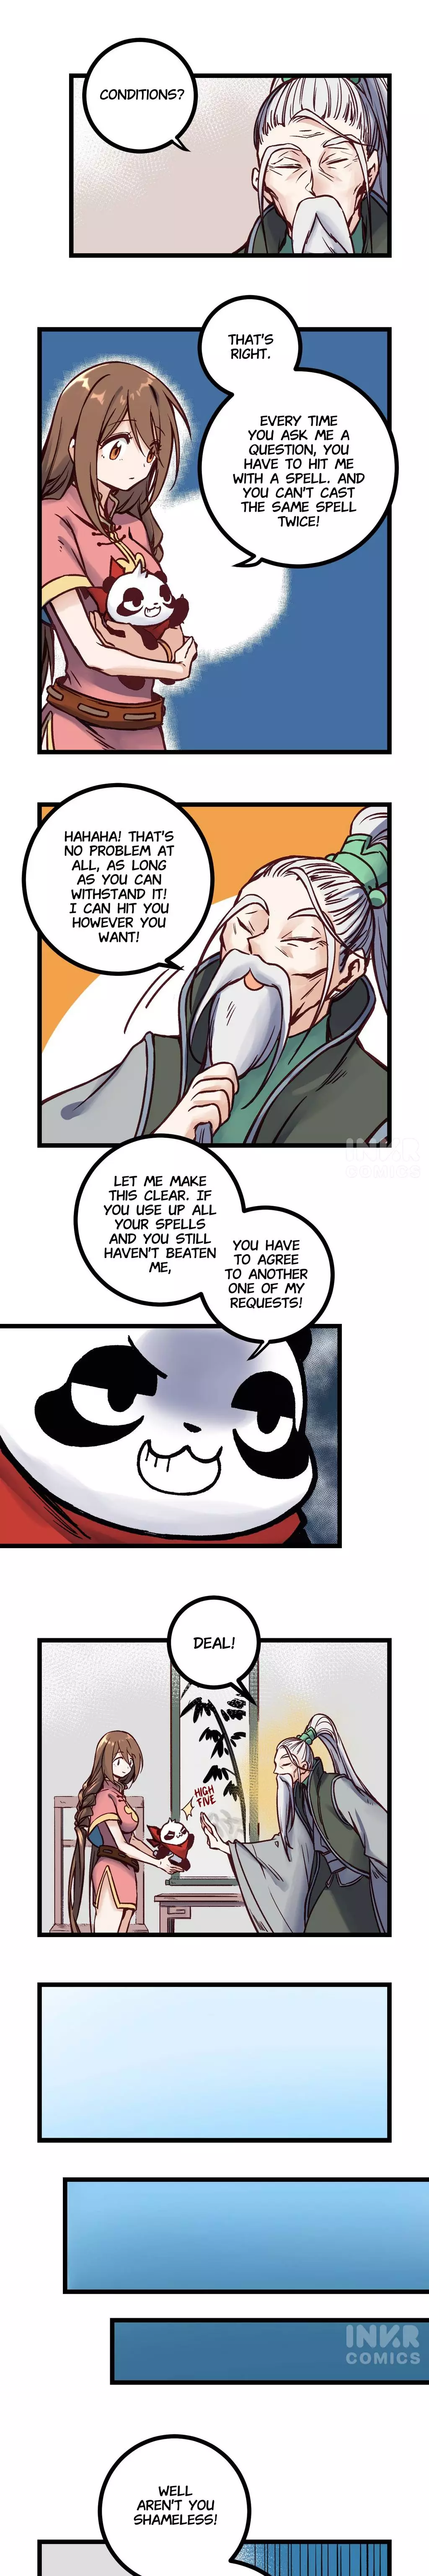 Naughty Panda - 11 page 1-0596cc48